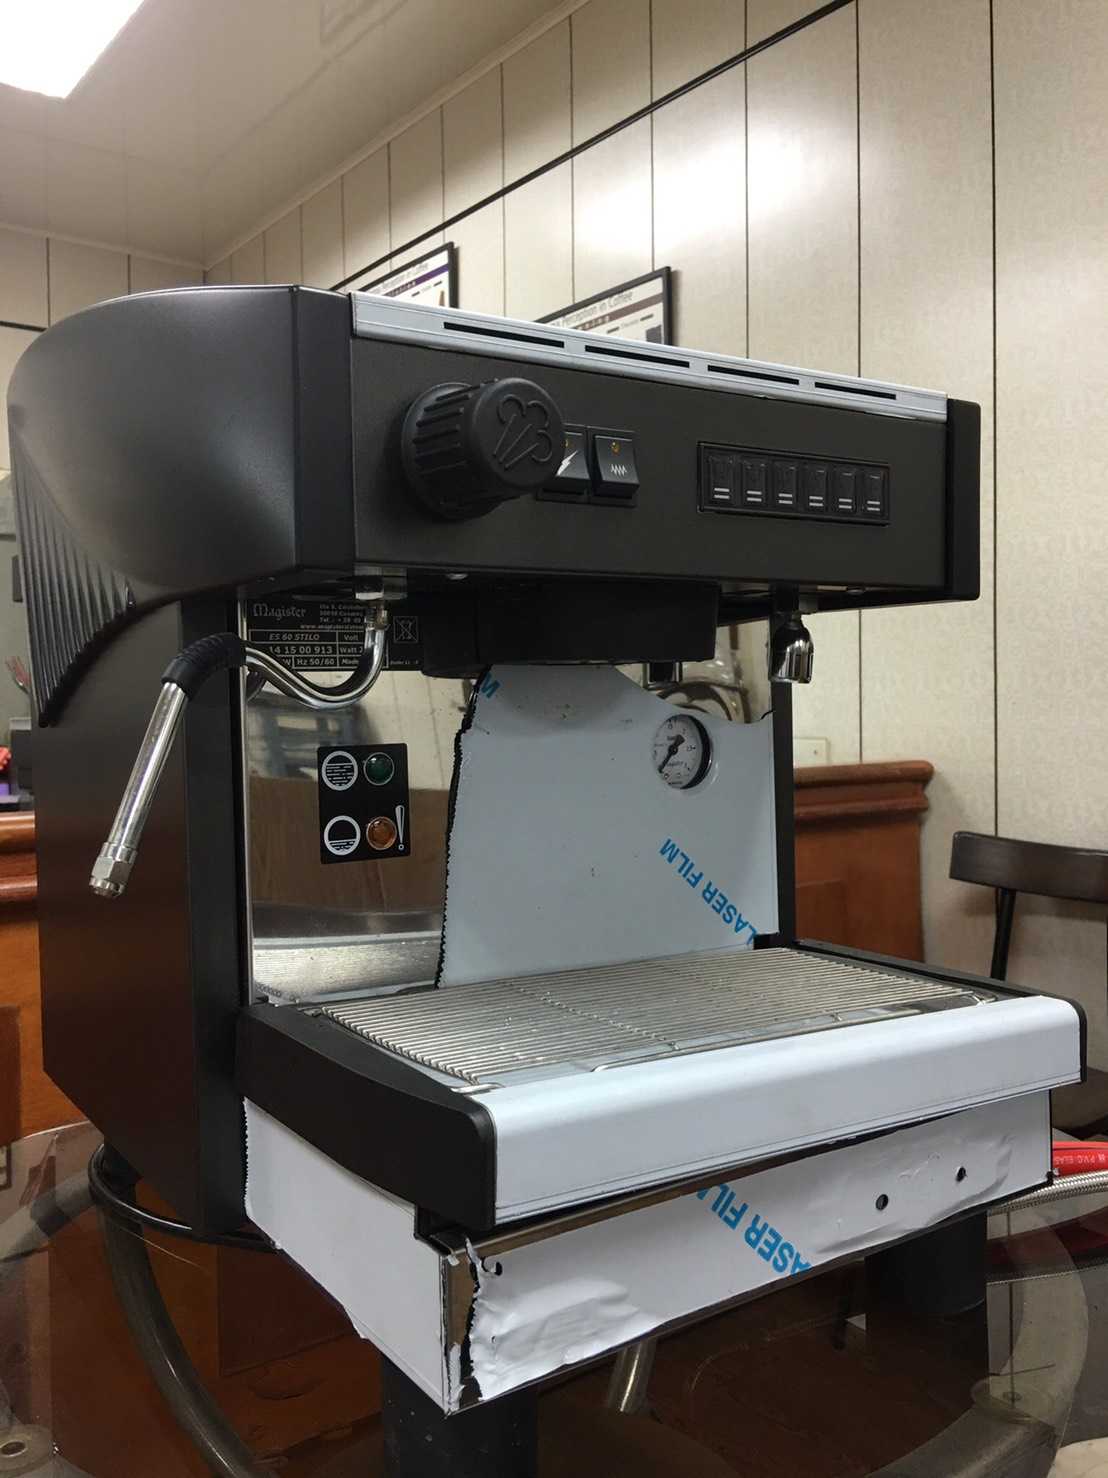 magistcr半自動單孔咖啡機 義大利原裝進口機器 歡迎詢問